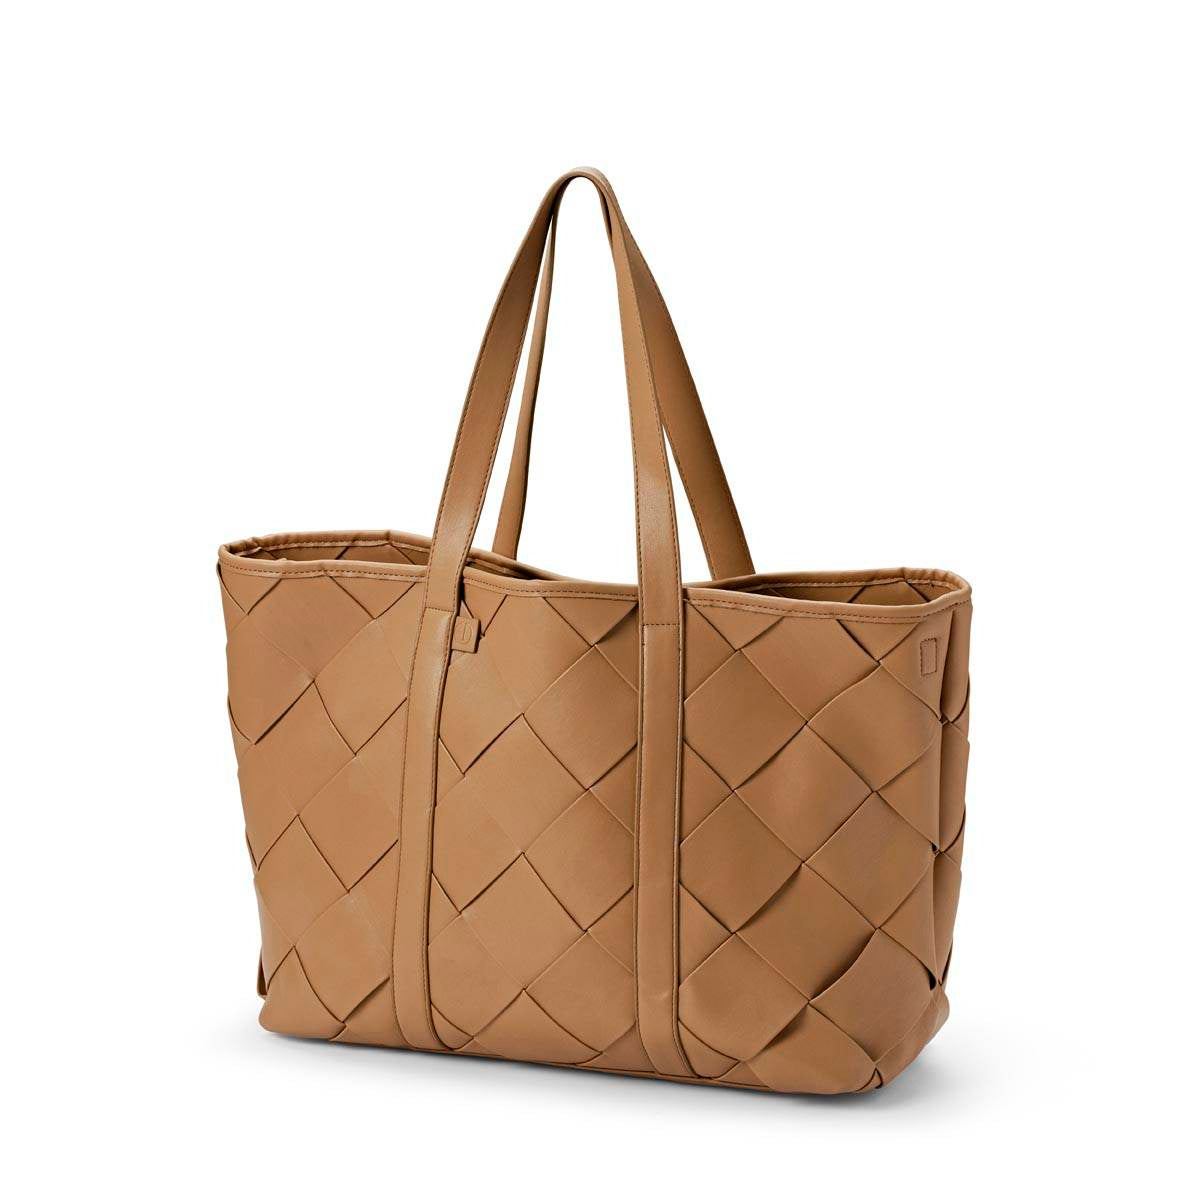 Stylowa torba do wózka Elodie Details Caramel Braided dla mamy, która ceni modny design i funkcjonalność.